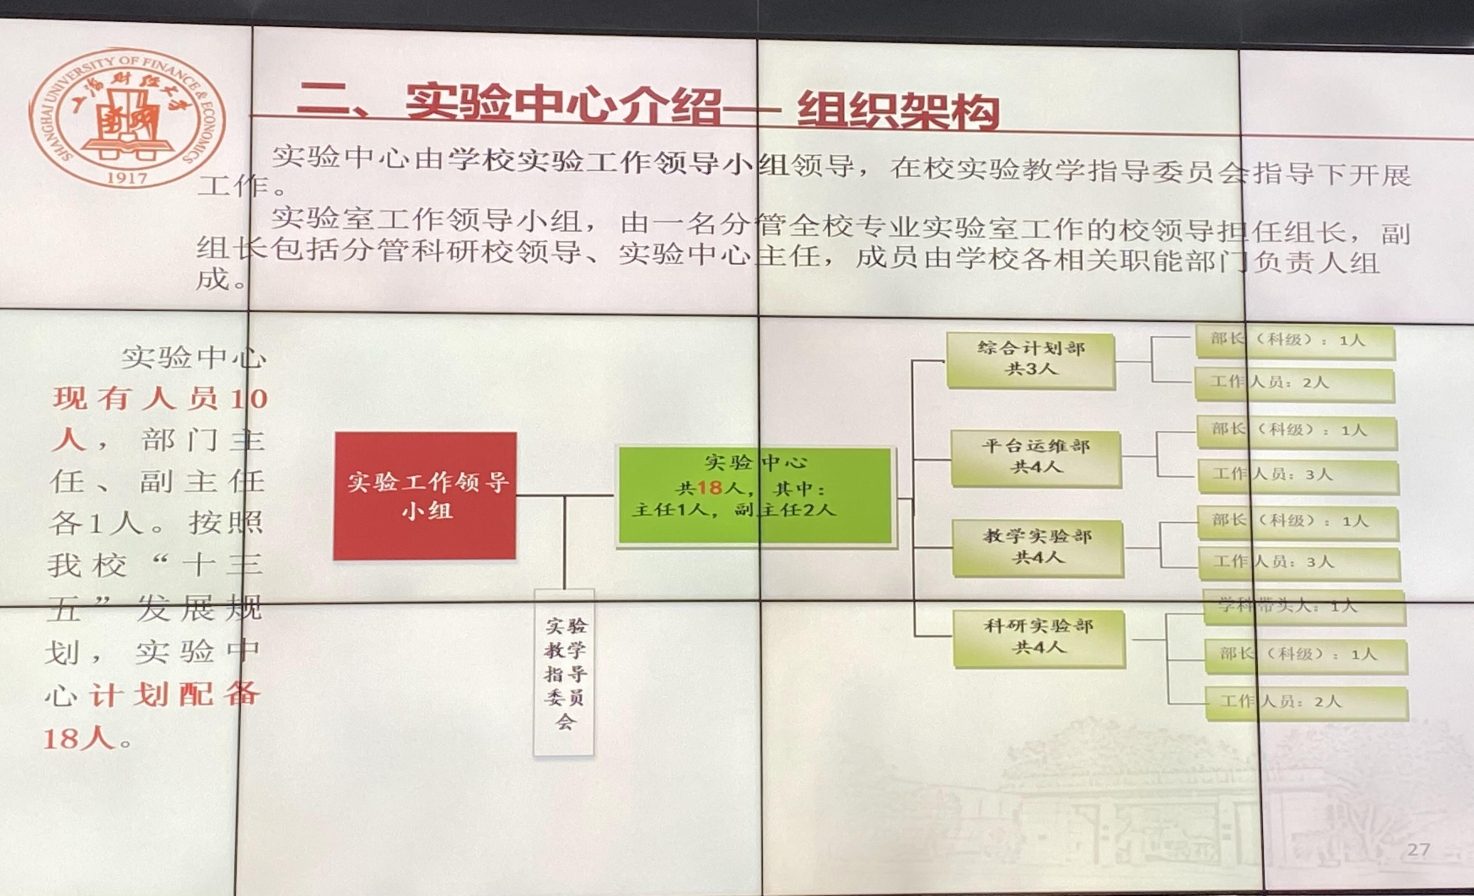 图为上海财经大学经济与管理国家级实验教学示范中心组织架构情况